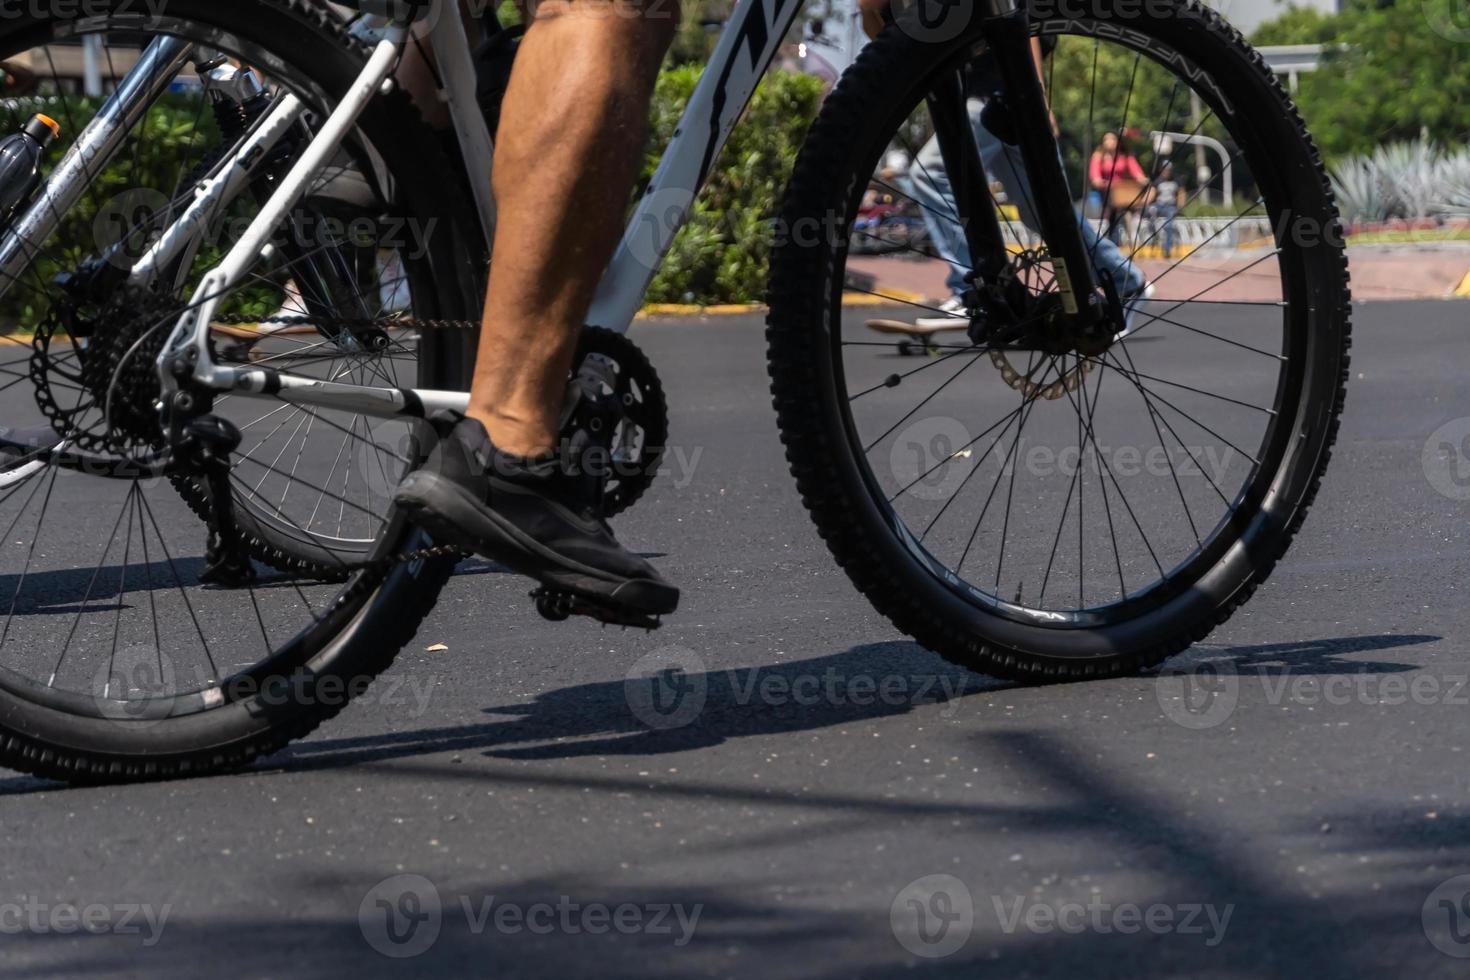 jovem com bicicleta personalizada mostra seu estilo andando na rua em um dia ensolarado. foto